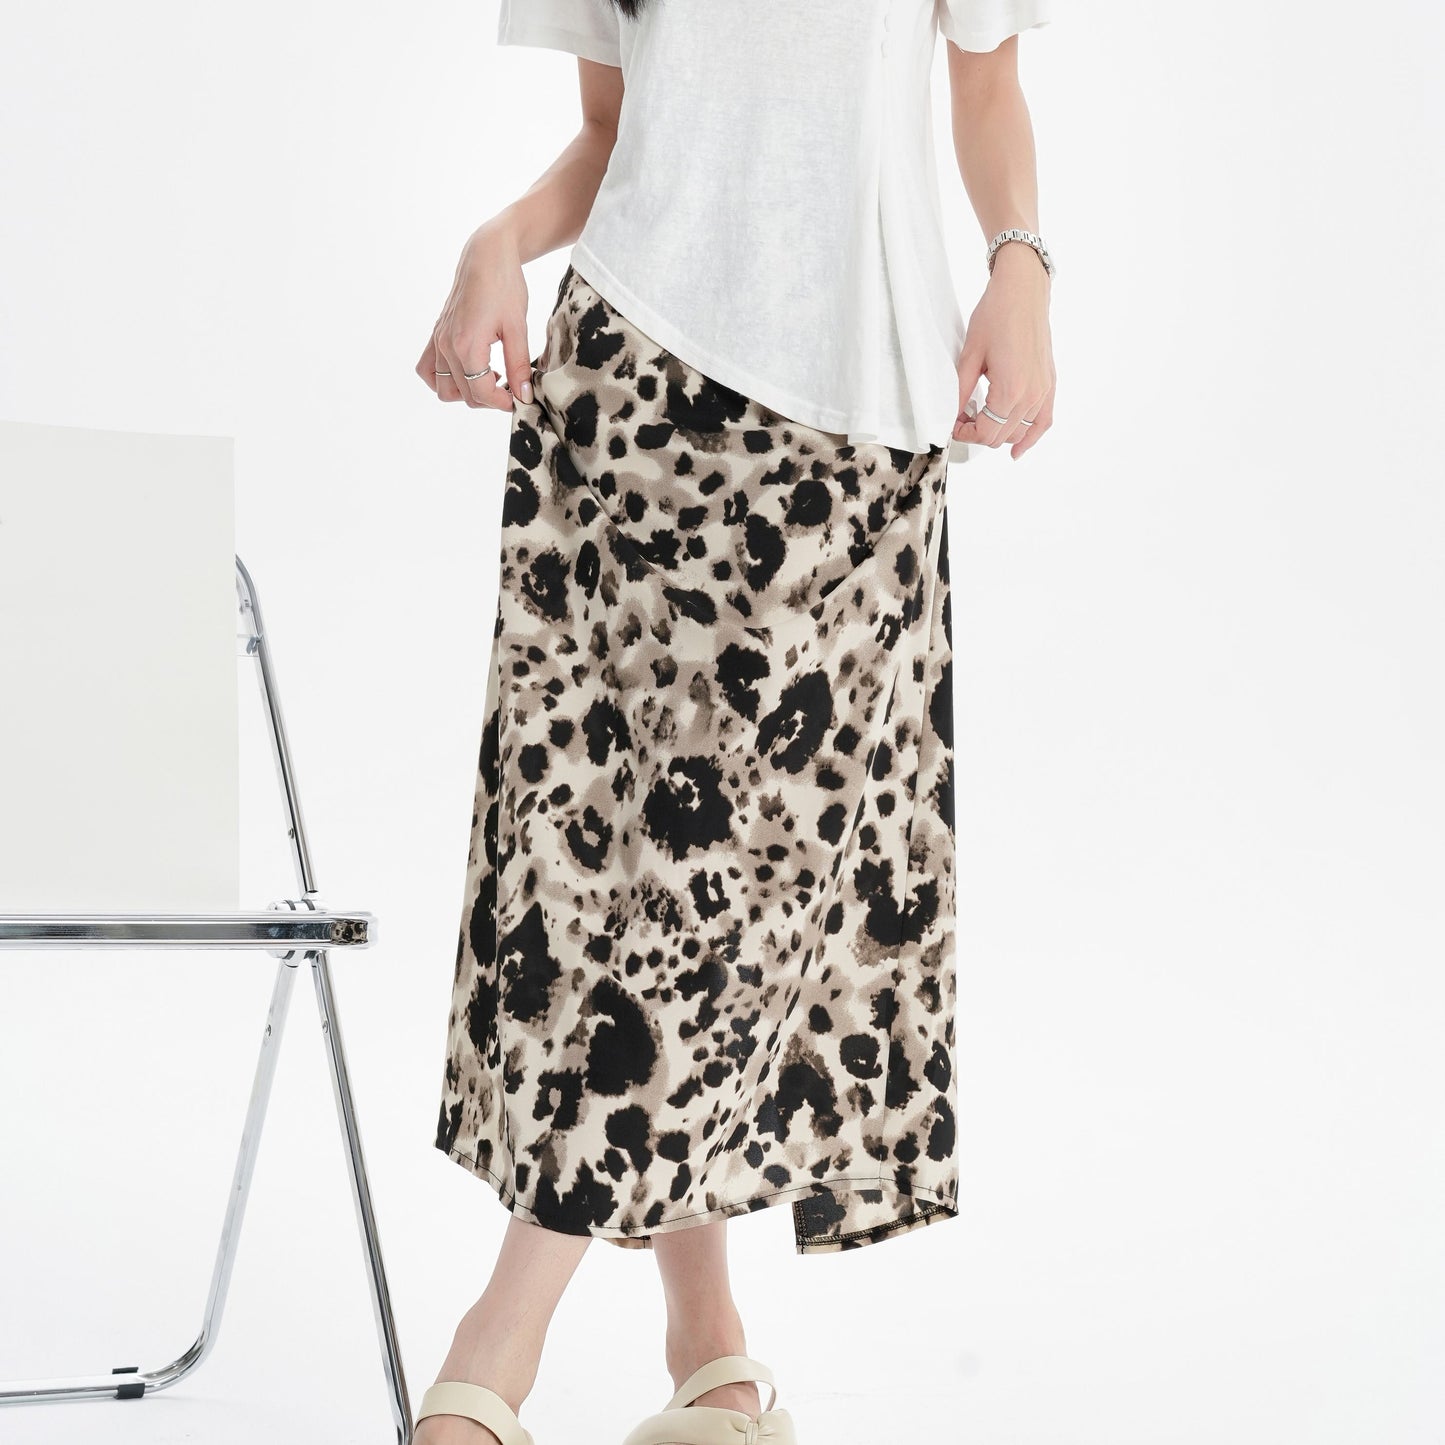 Falda de malla estampada de leopardo con cintura elástica y abertura dividida, de talle ajustado